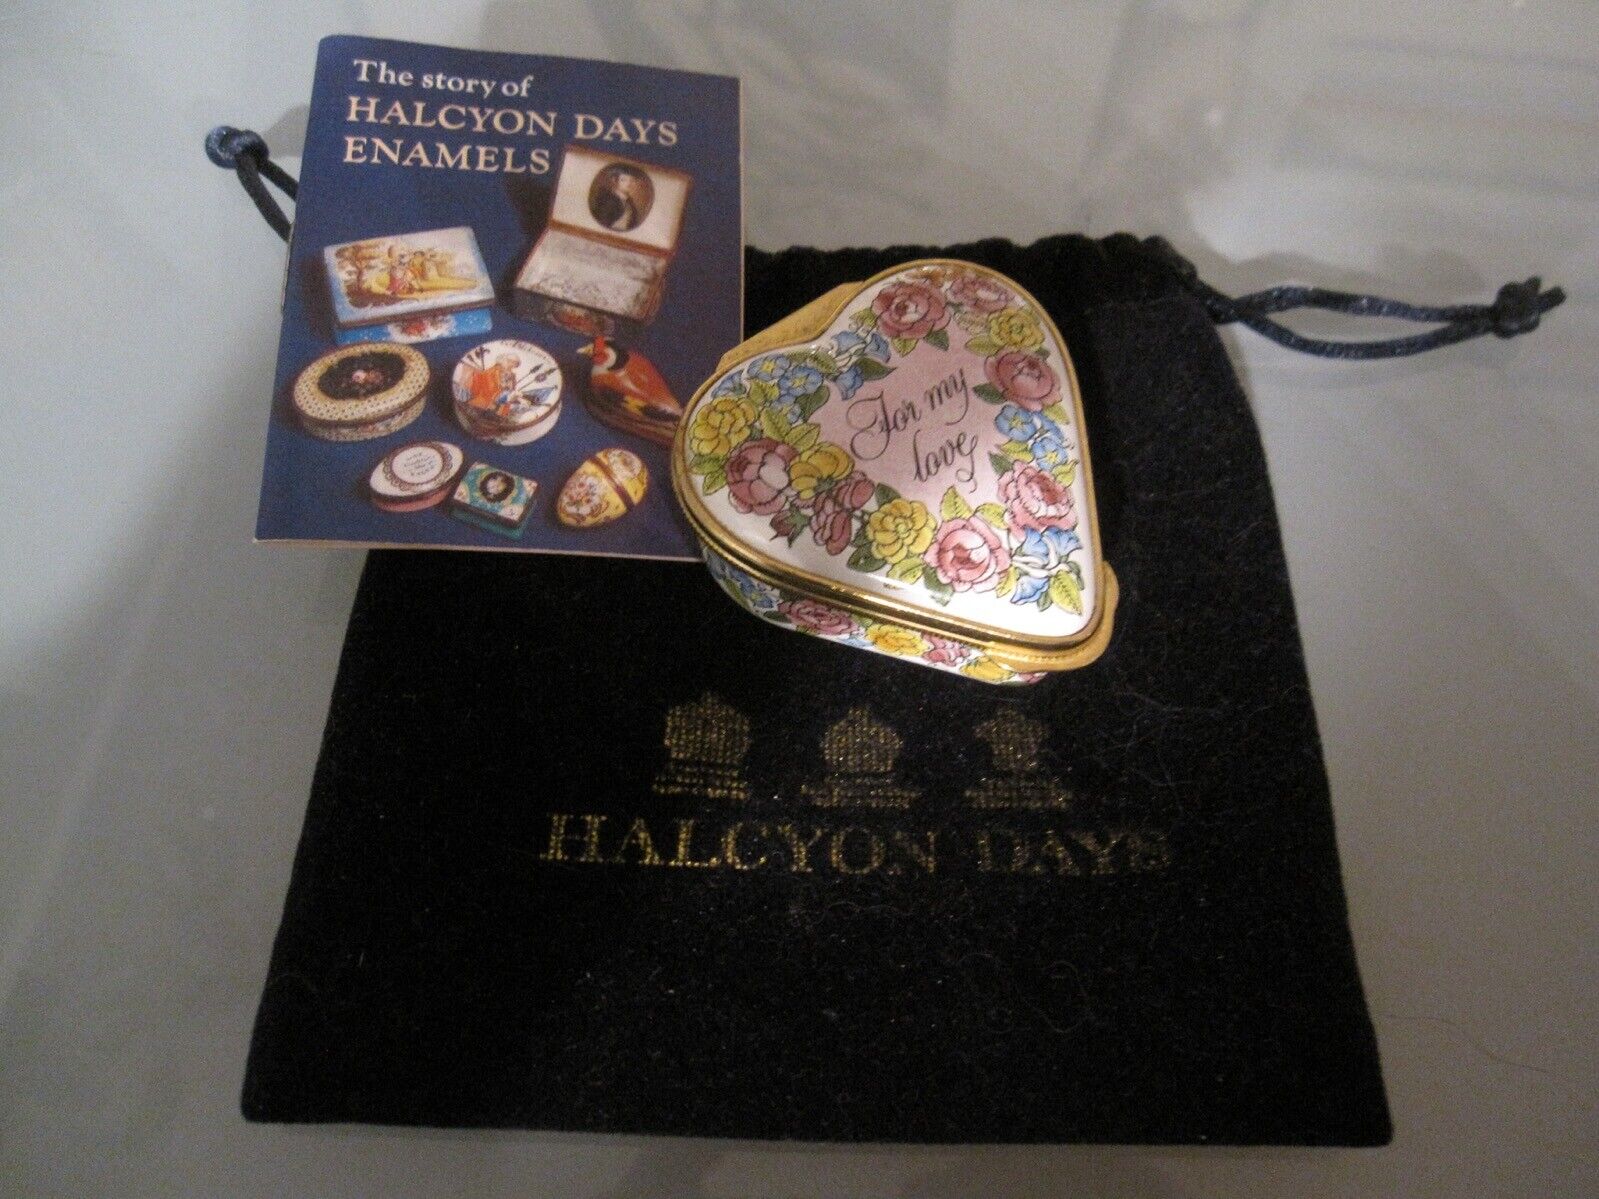 Halcyon Days Enamel Heart Shaped Box Bilston & Battersea Card + Pouch